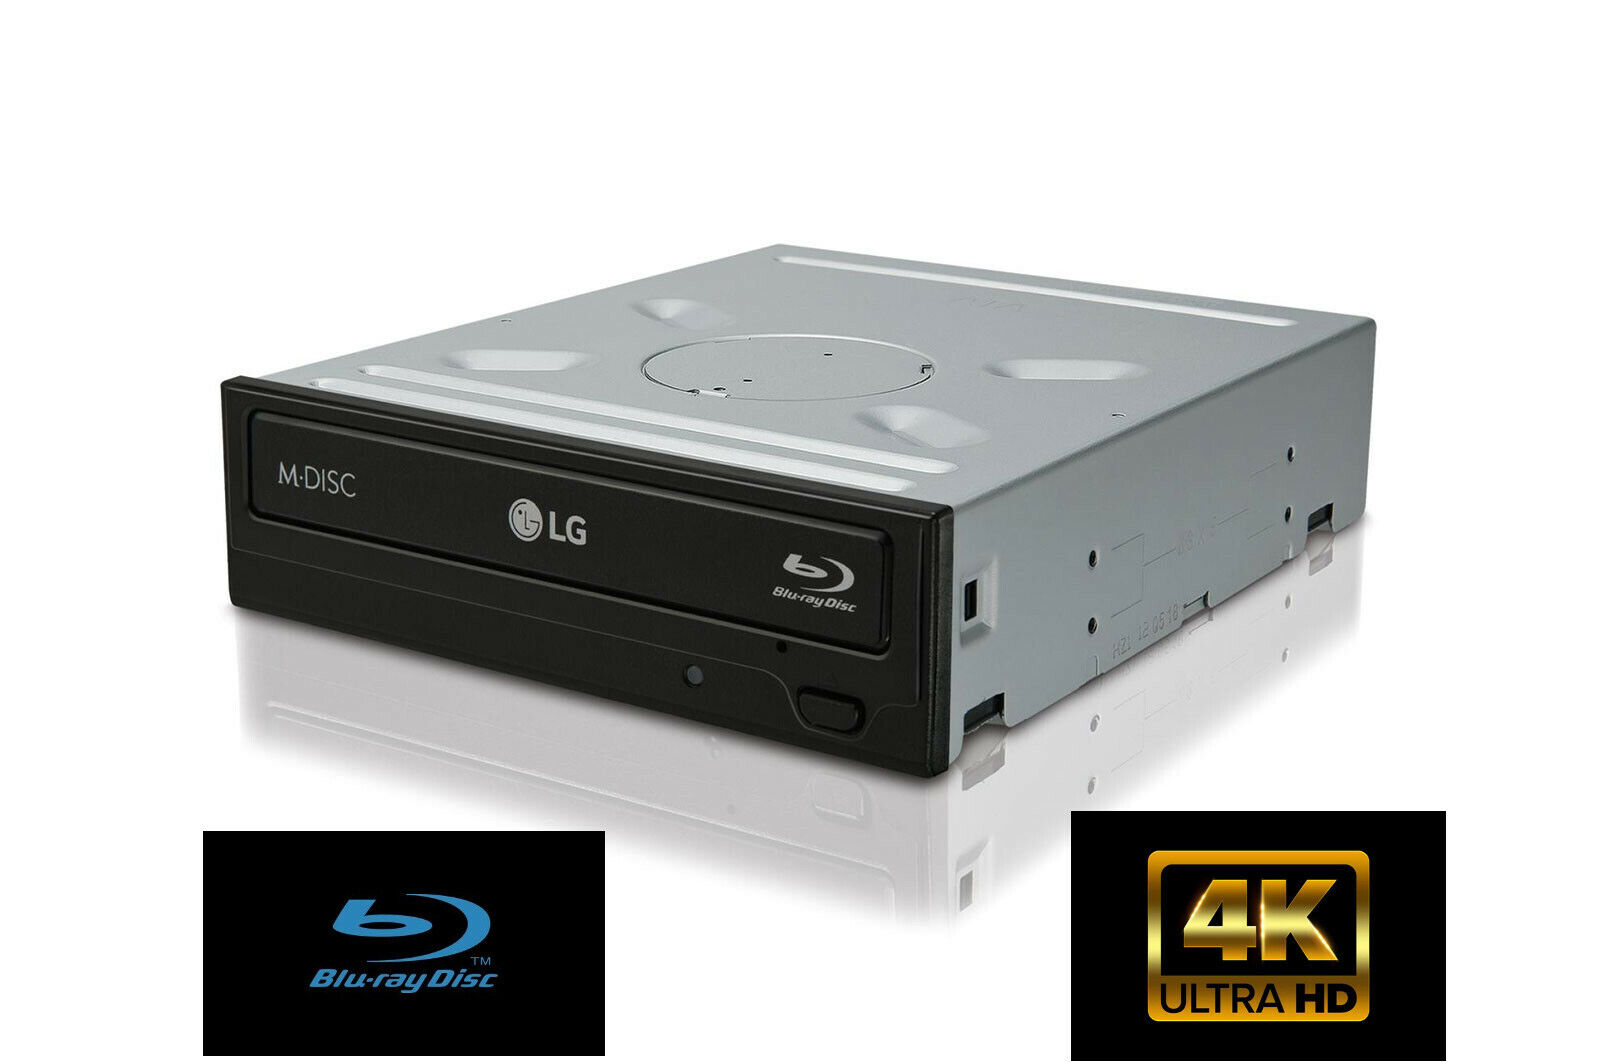 NEW LG WH14NS40 1.02 4K UHD friendly Blu-ray drive. 14X speed